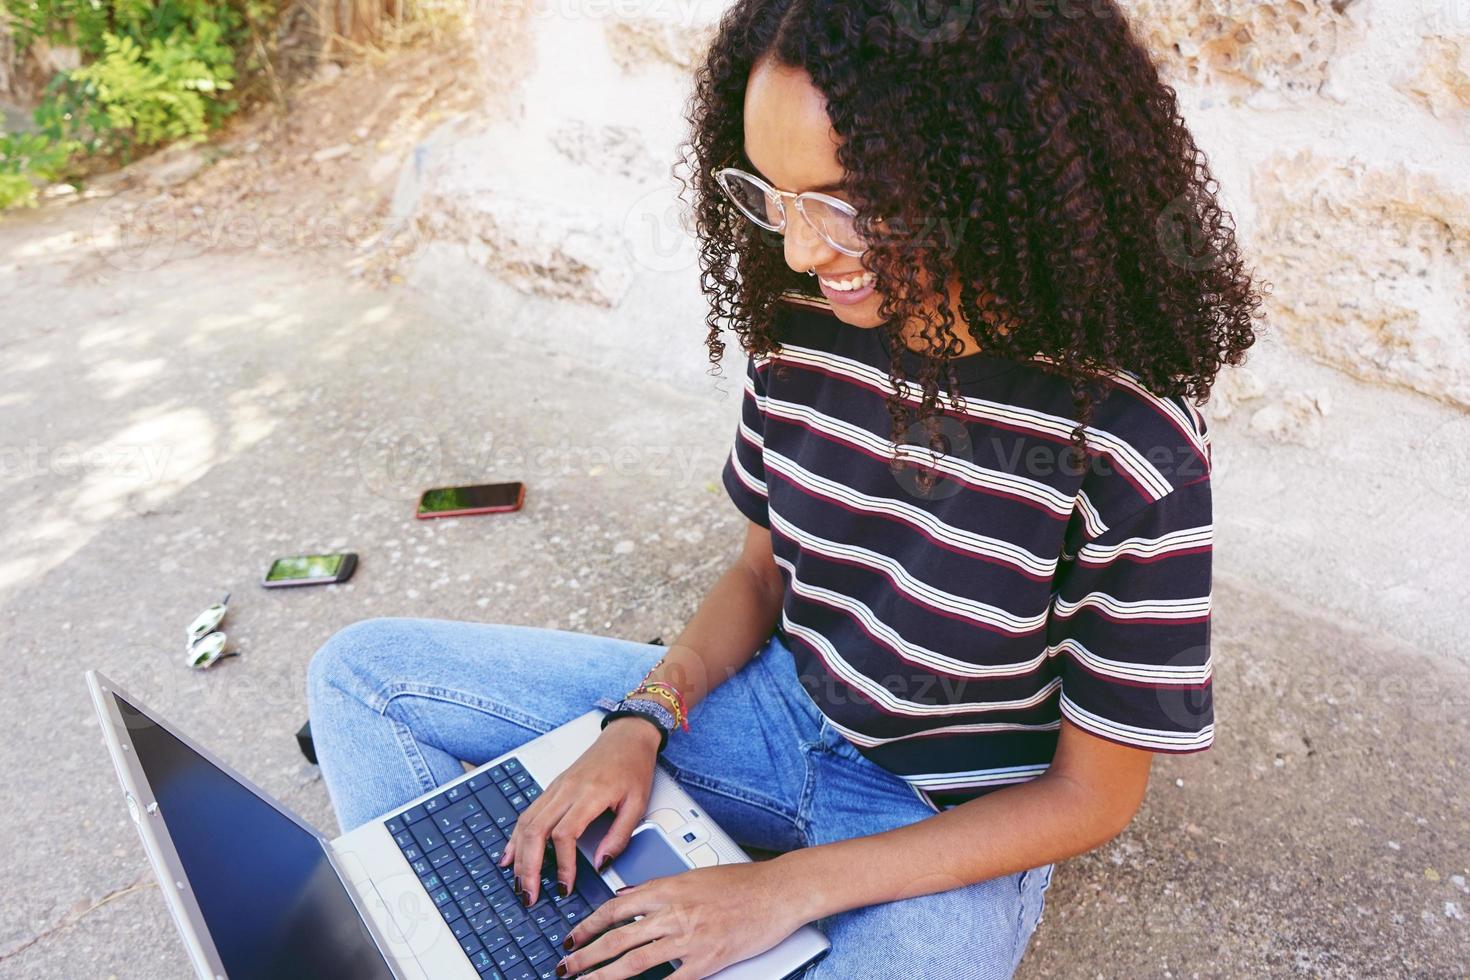 un ritratto di una giovane donna di colore sorridente felice con i capelli ricci che indossa occhiali, jeans e una t-shirt a righe, seduta per terra e lavora o fa i compiti foto